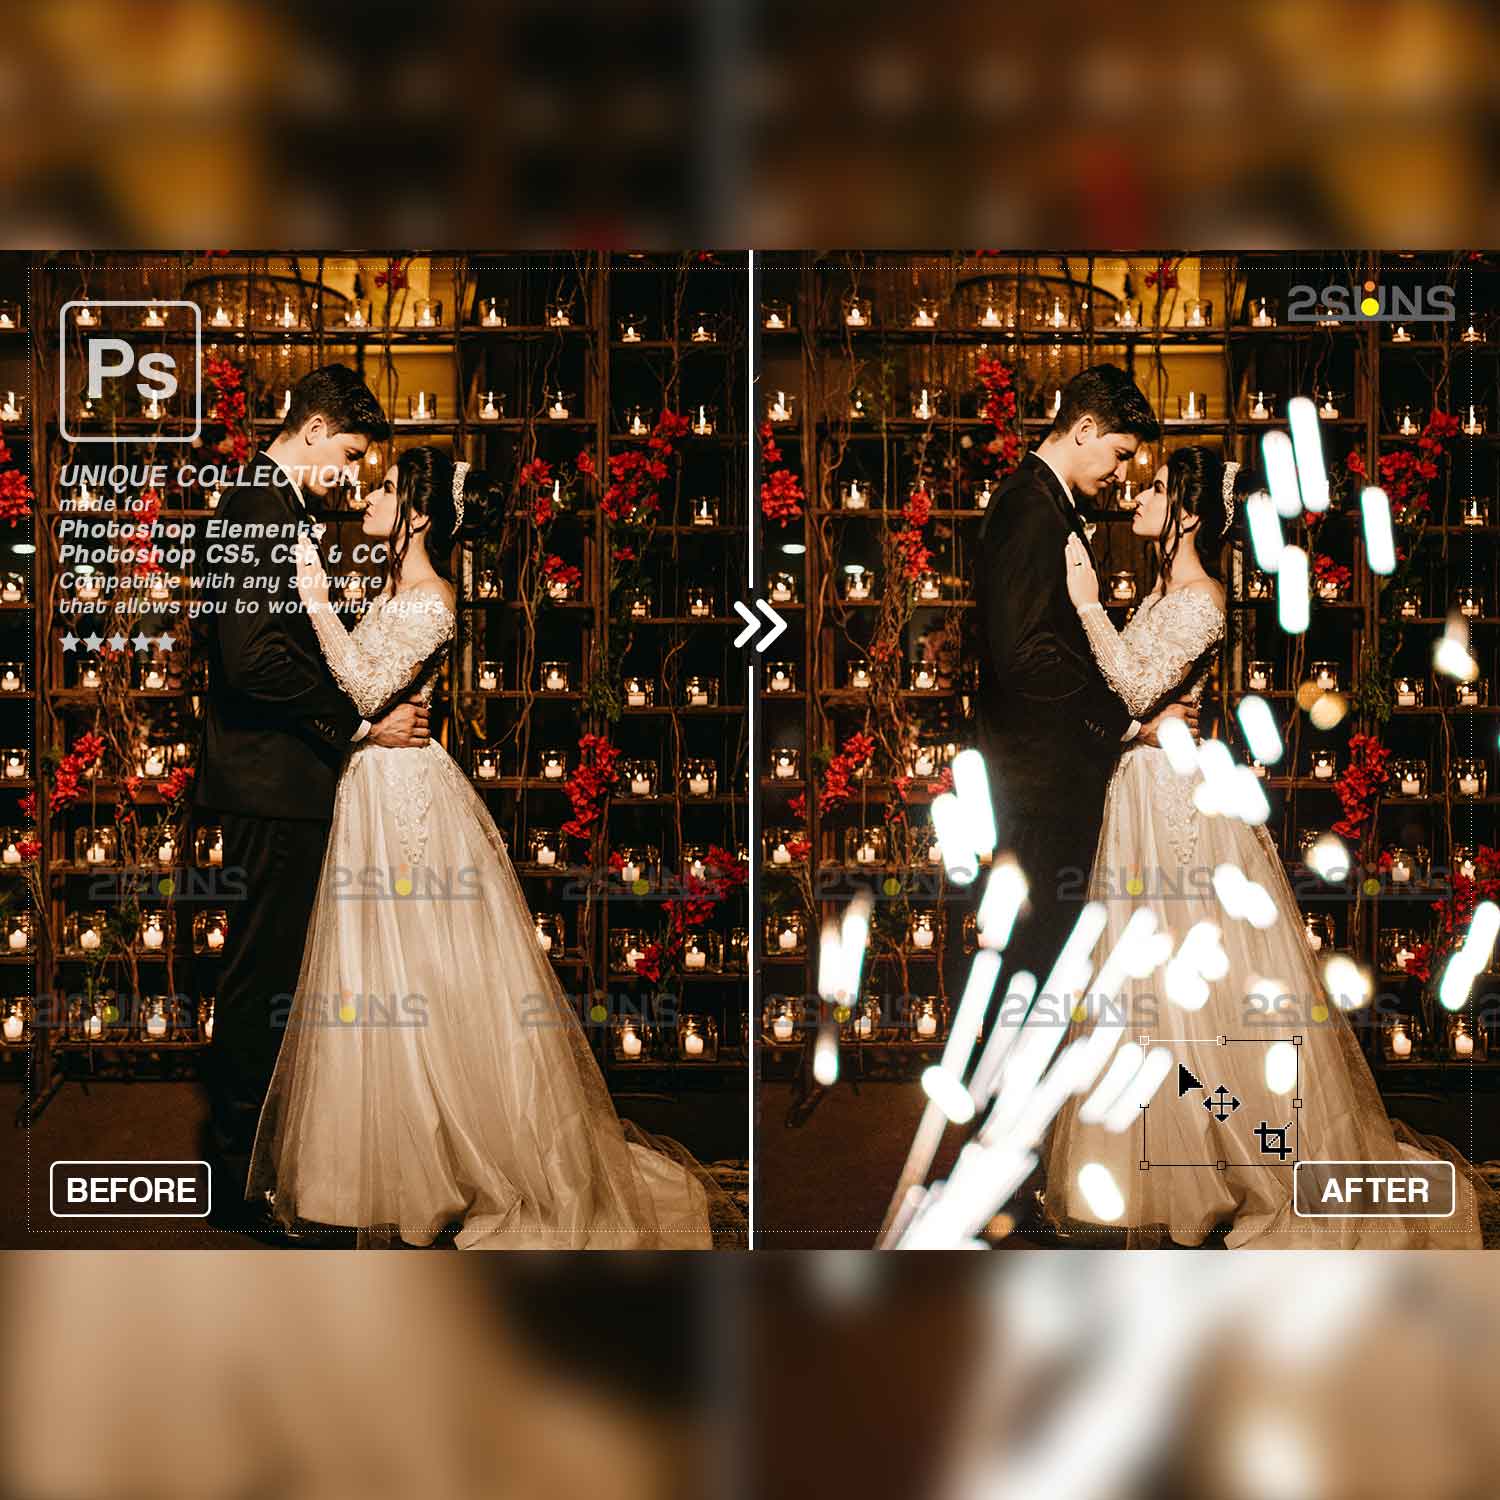 Wedding Sparkler Overlays cover image.